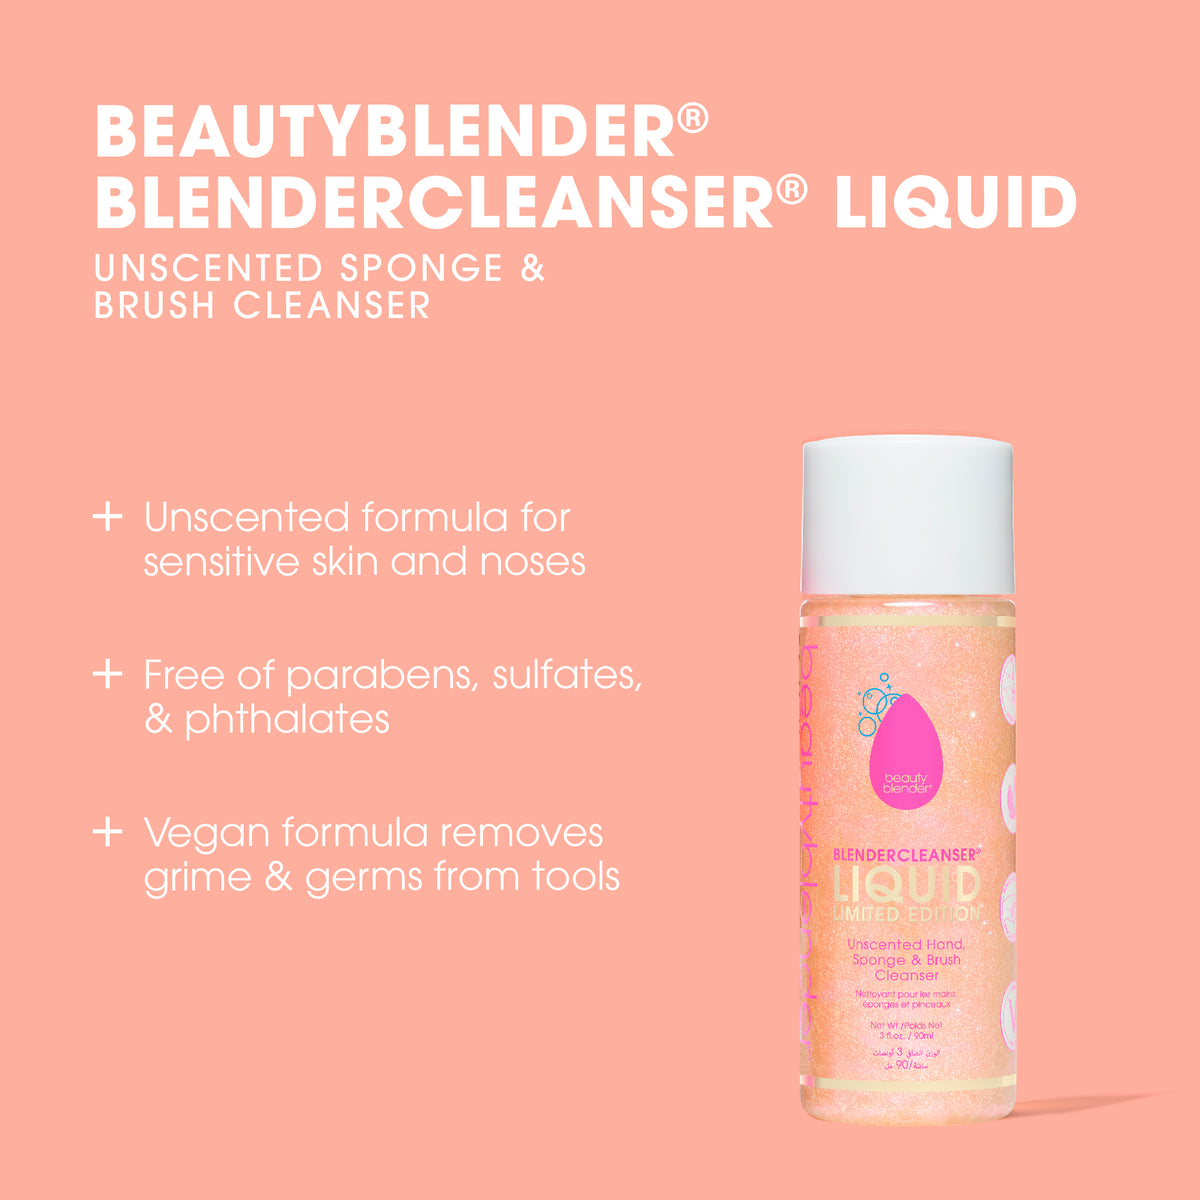 Blendercleanser® Liquid Limited Edition Sponge & Brush Cleanser.